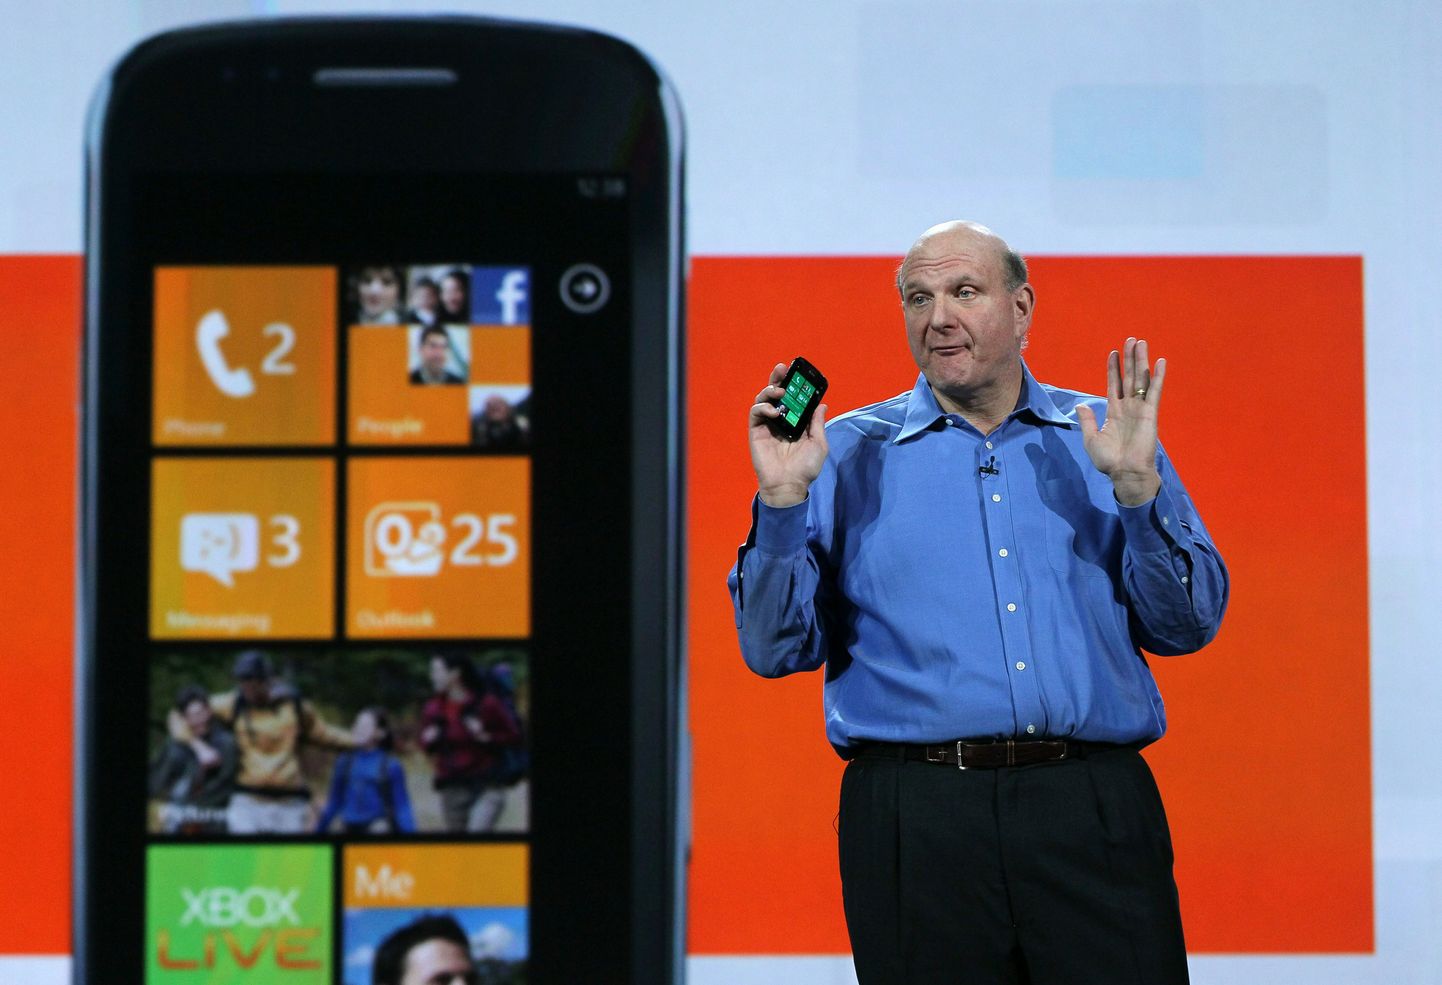 Microsofti juht Steve Ballmer tutvustamas Windows Phone 7 varustatud mobiiltelefoni.